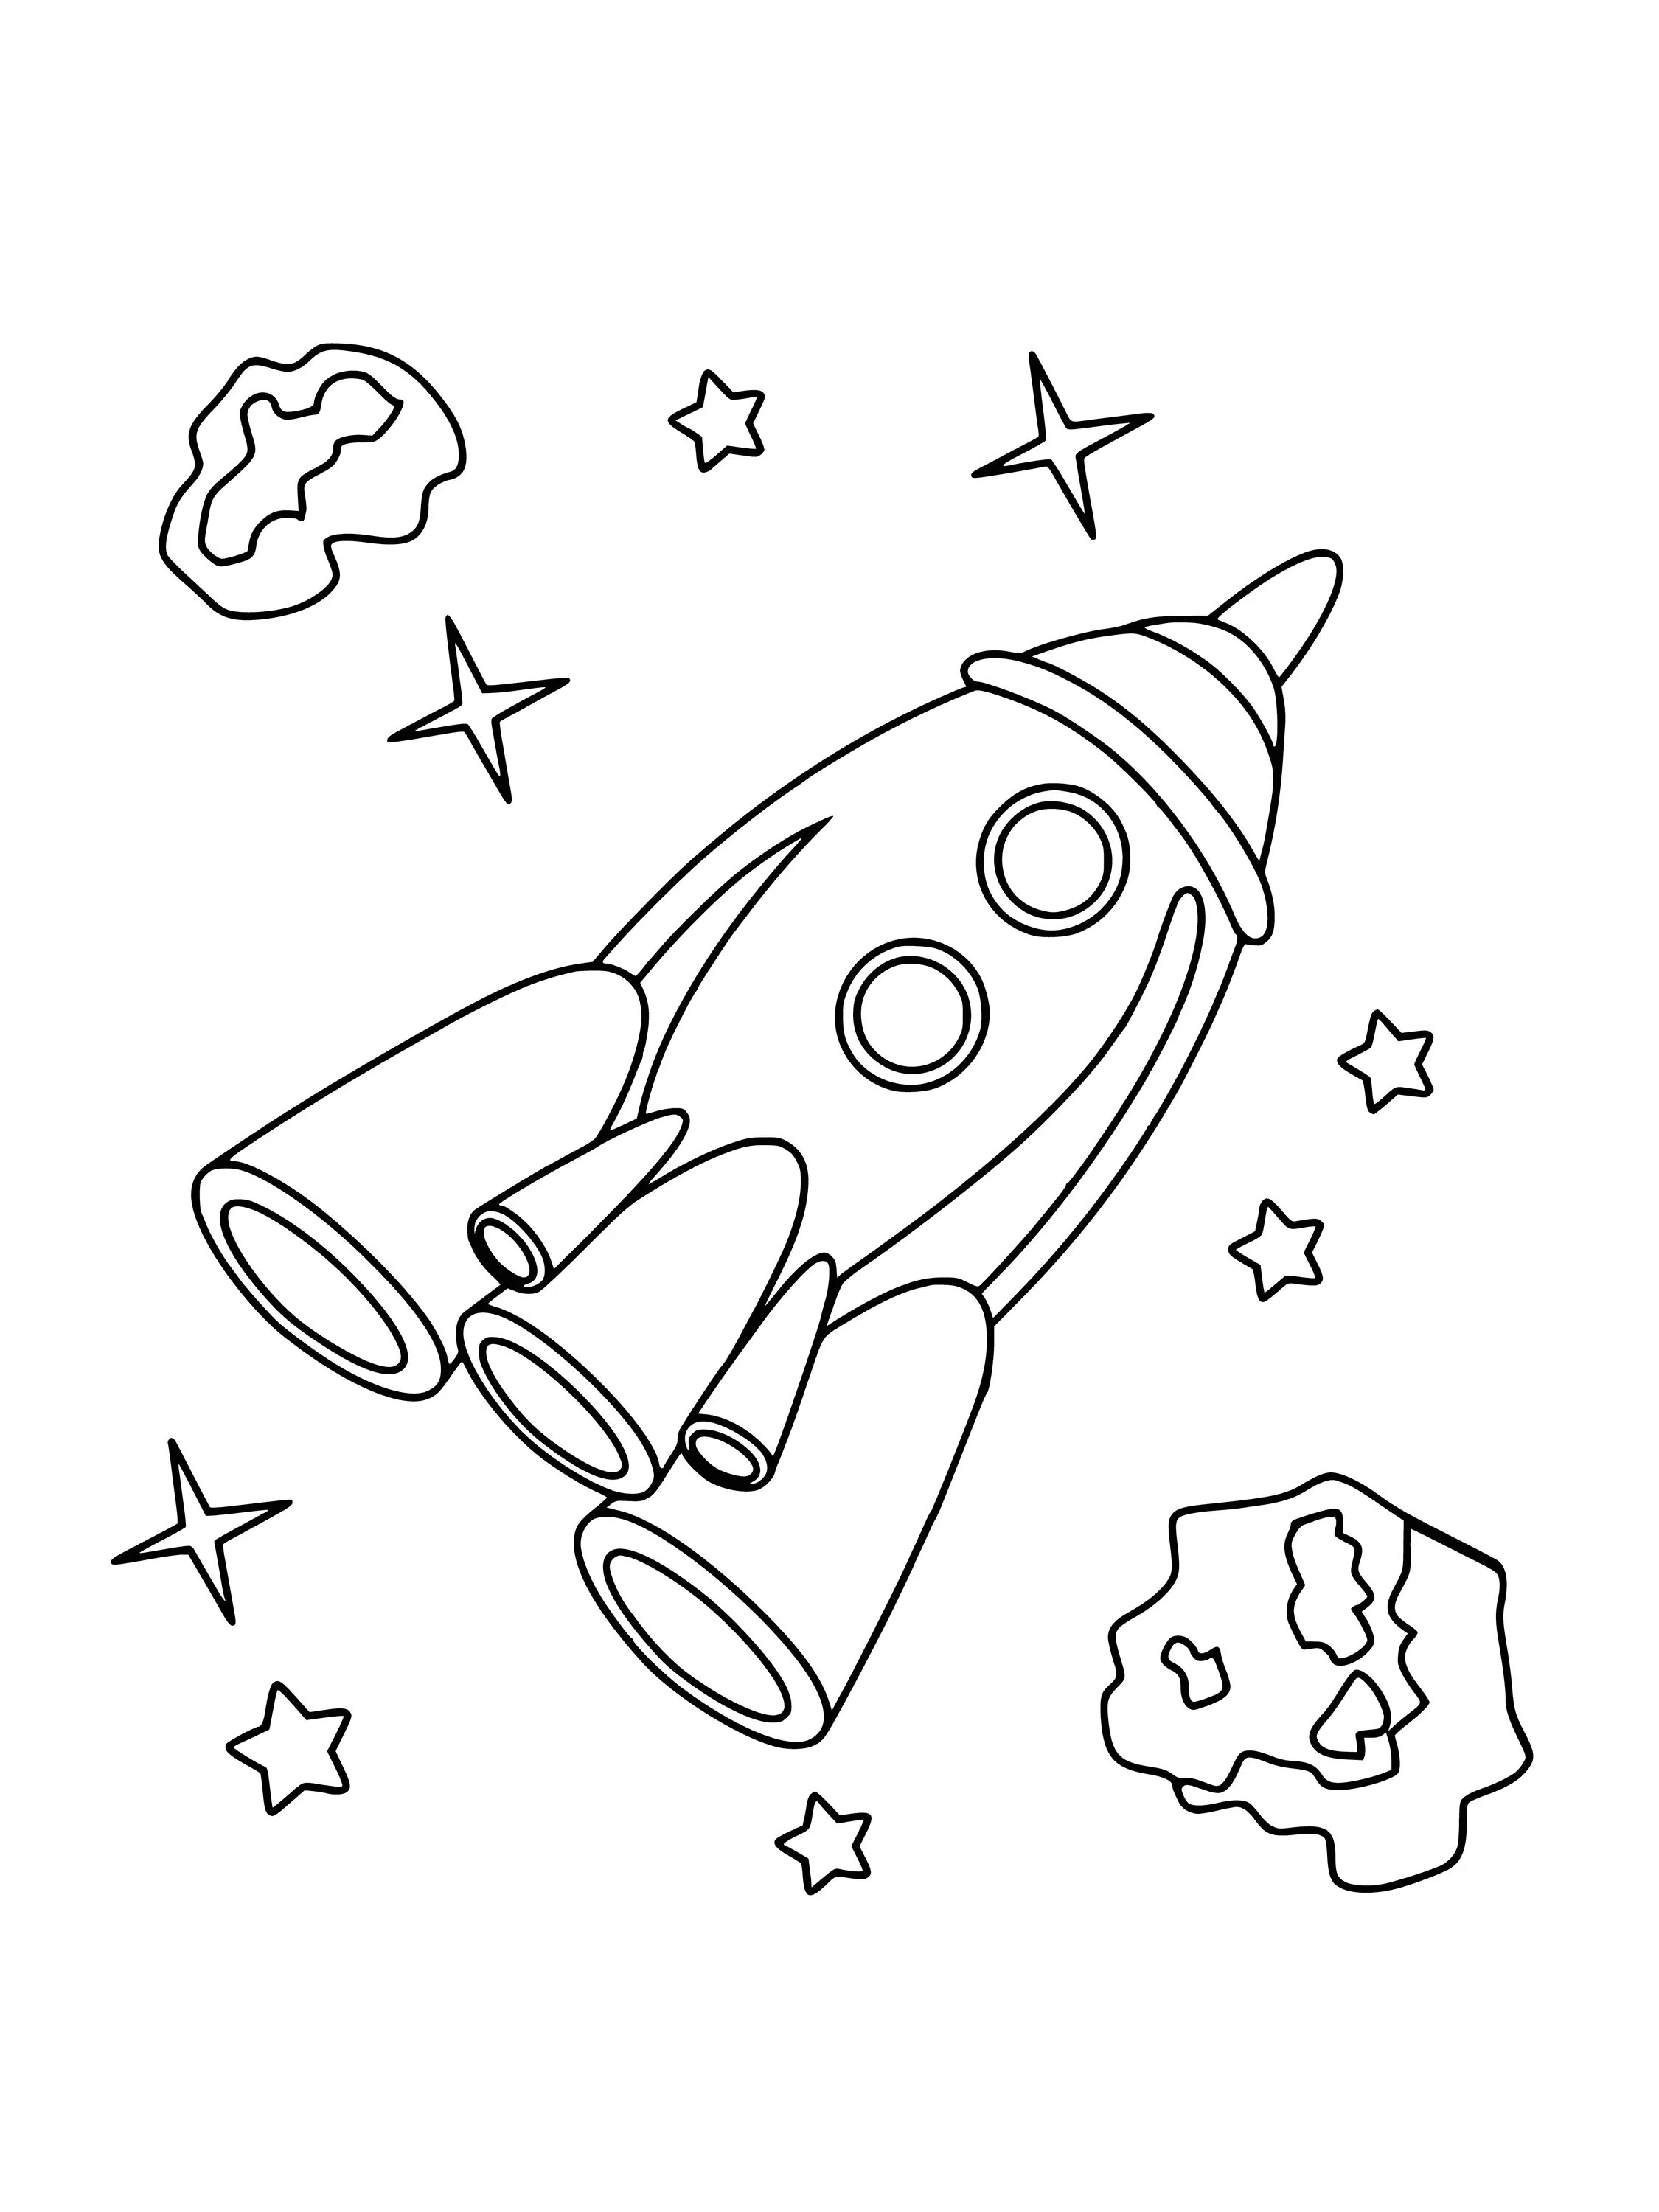 Ракета раскраска. Космос раскраска для детей. Ракета раскраска для детей. Раскраска для мальчиков ракета.